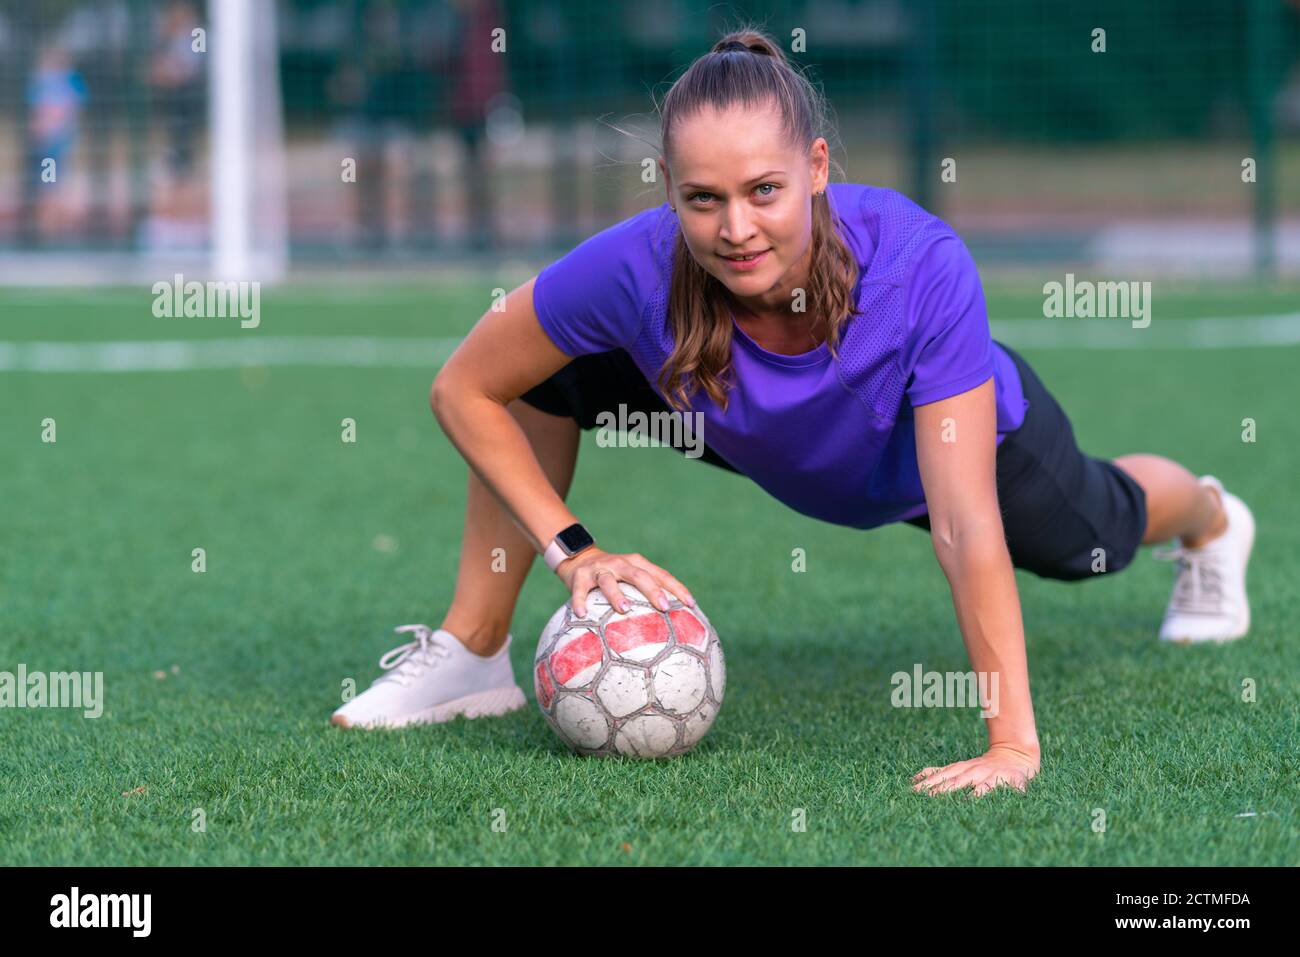 Fit gesunde junge Frau posiert mit Fußball auf einem Grüner Sportplatz in  ebener Ansicht von ihr Lächelnd auf die Kamera in einer Gesundheit und  Fitness oder Stockfotografie - Alamy